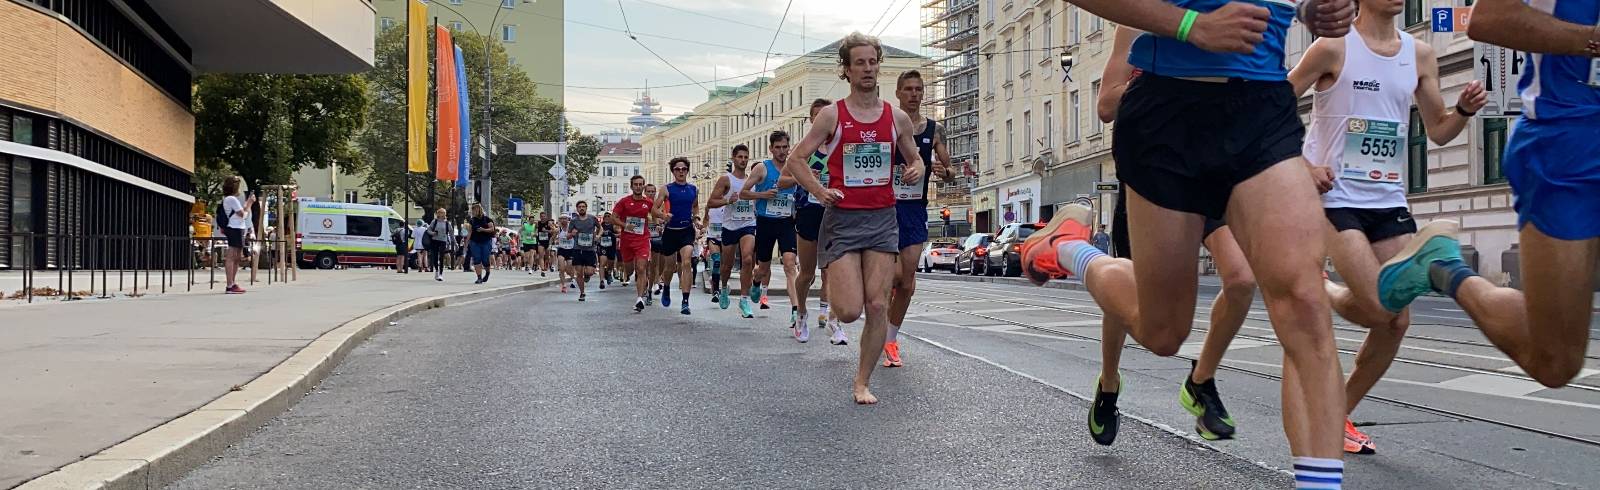 Todesfall überschattet Vienna City Marathon